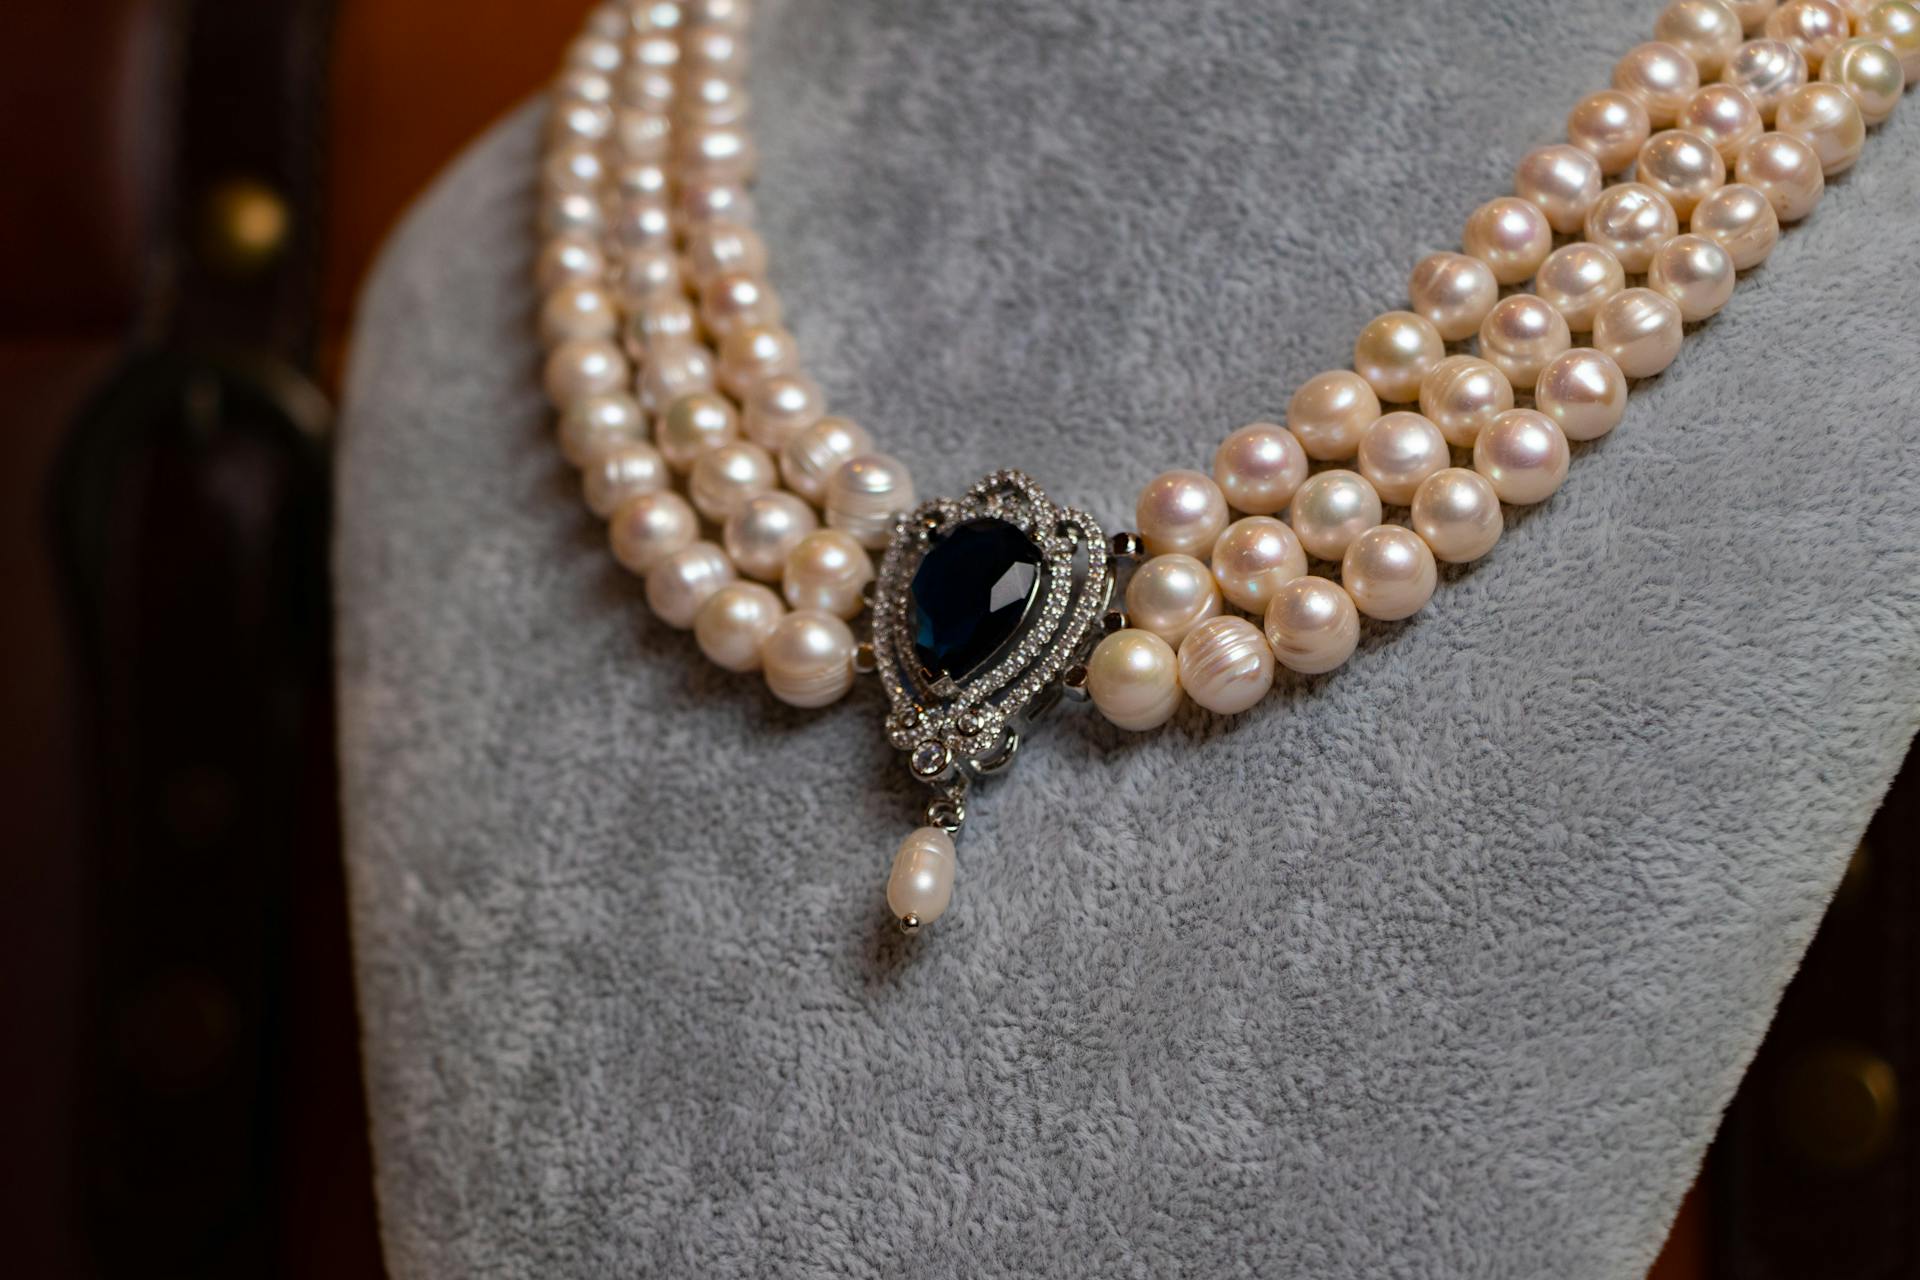 Eine Perlenkette mit einem dunklen Edelstein | Quelle: Pexels